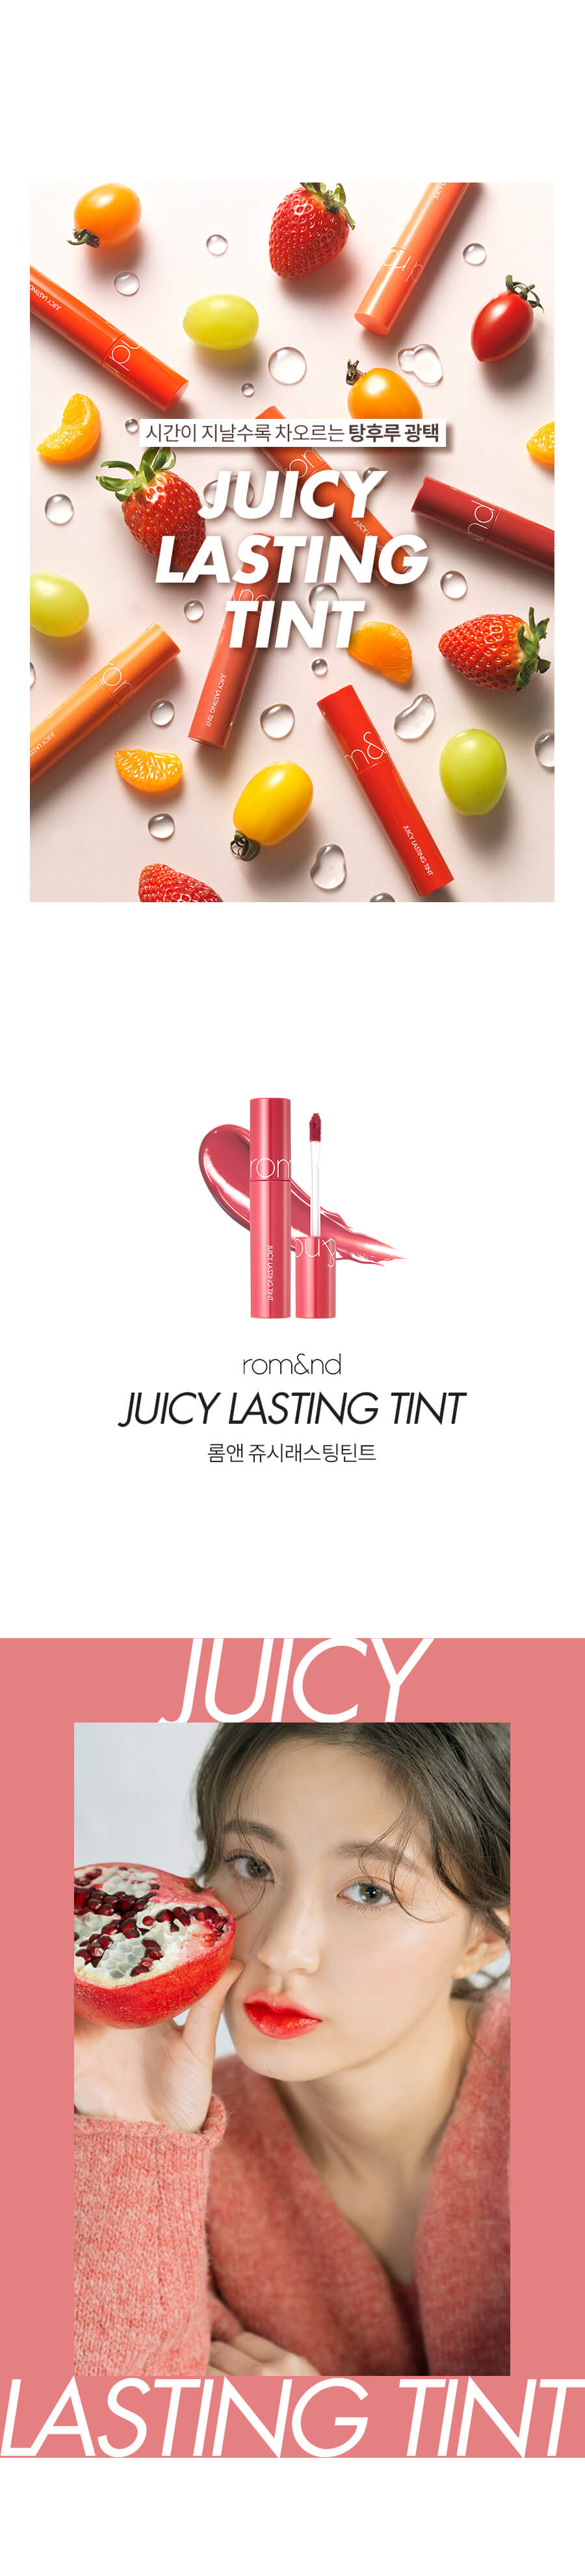 rom&nd, ลิป rom&nd, rom&nd Juicy Lasting Tint, rom&nd Juicy Lasting Tint รีวิว, rom&nd Juicy Lasting Tint ราคา, rom&nd Juicy Lasting Tint สีไหนสวย, rom&nd Juicy Lasting Tint 5.5 g. #06 ทินท์เนื้อชุ่มฉ่ำ ให้ความฉ่ำวาวสุดๆ เนื้อทินท์ทาง่าย และเนียนเรียบ เกลี่ยง่าย ให้สีสันสดใสและสม่ำเสมอ, rom&nd Juicy Lasting Tint 5.5 g. #09